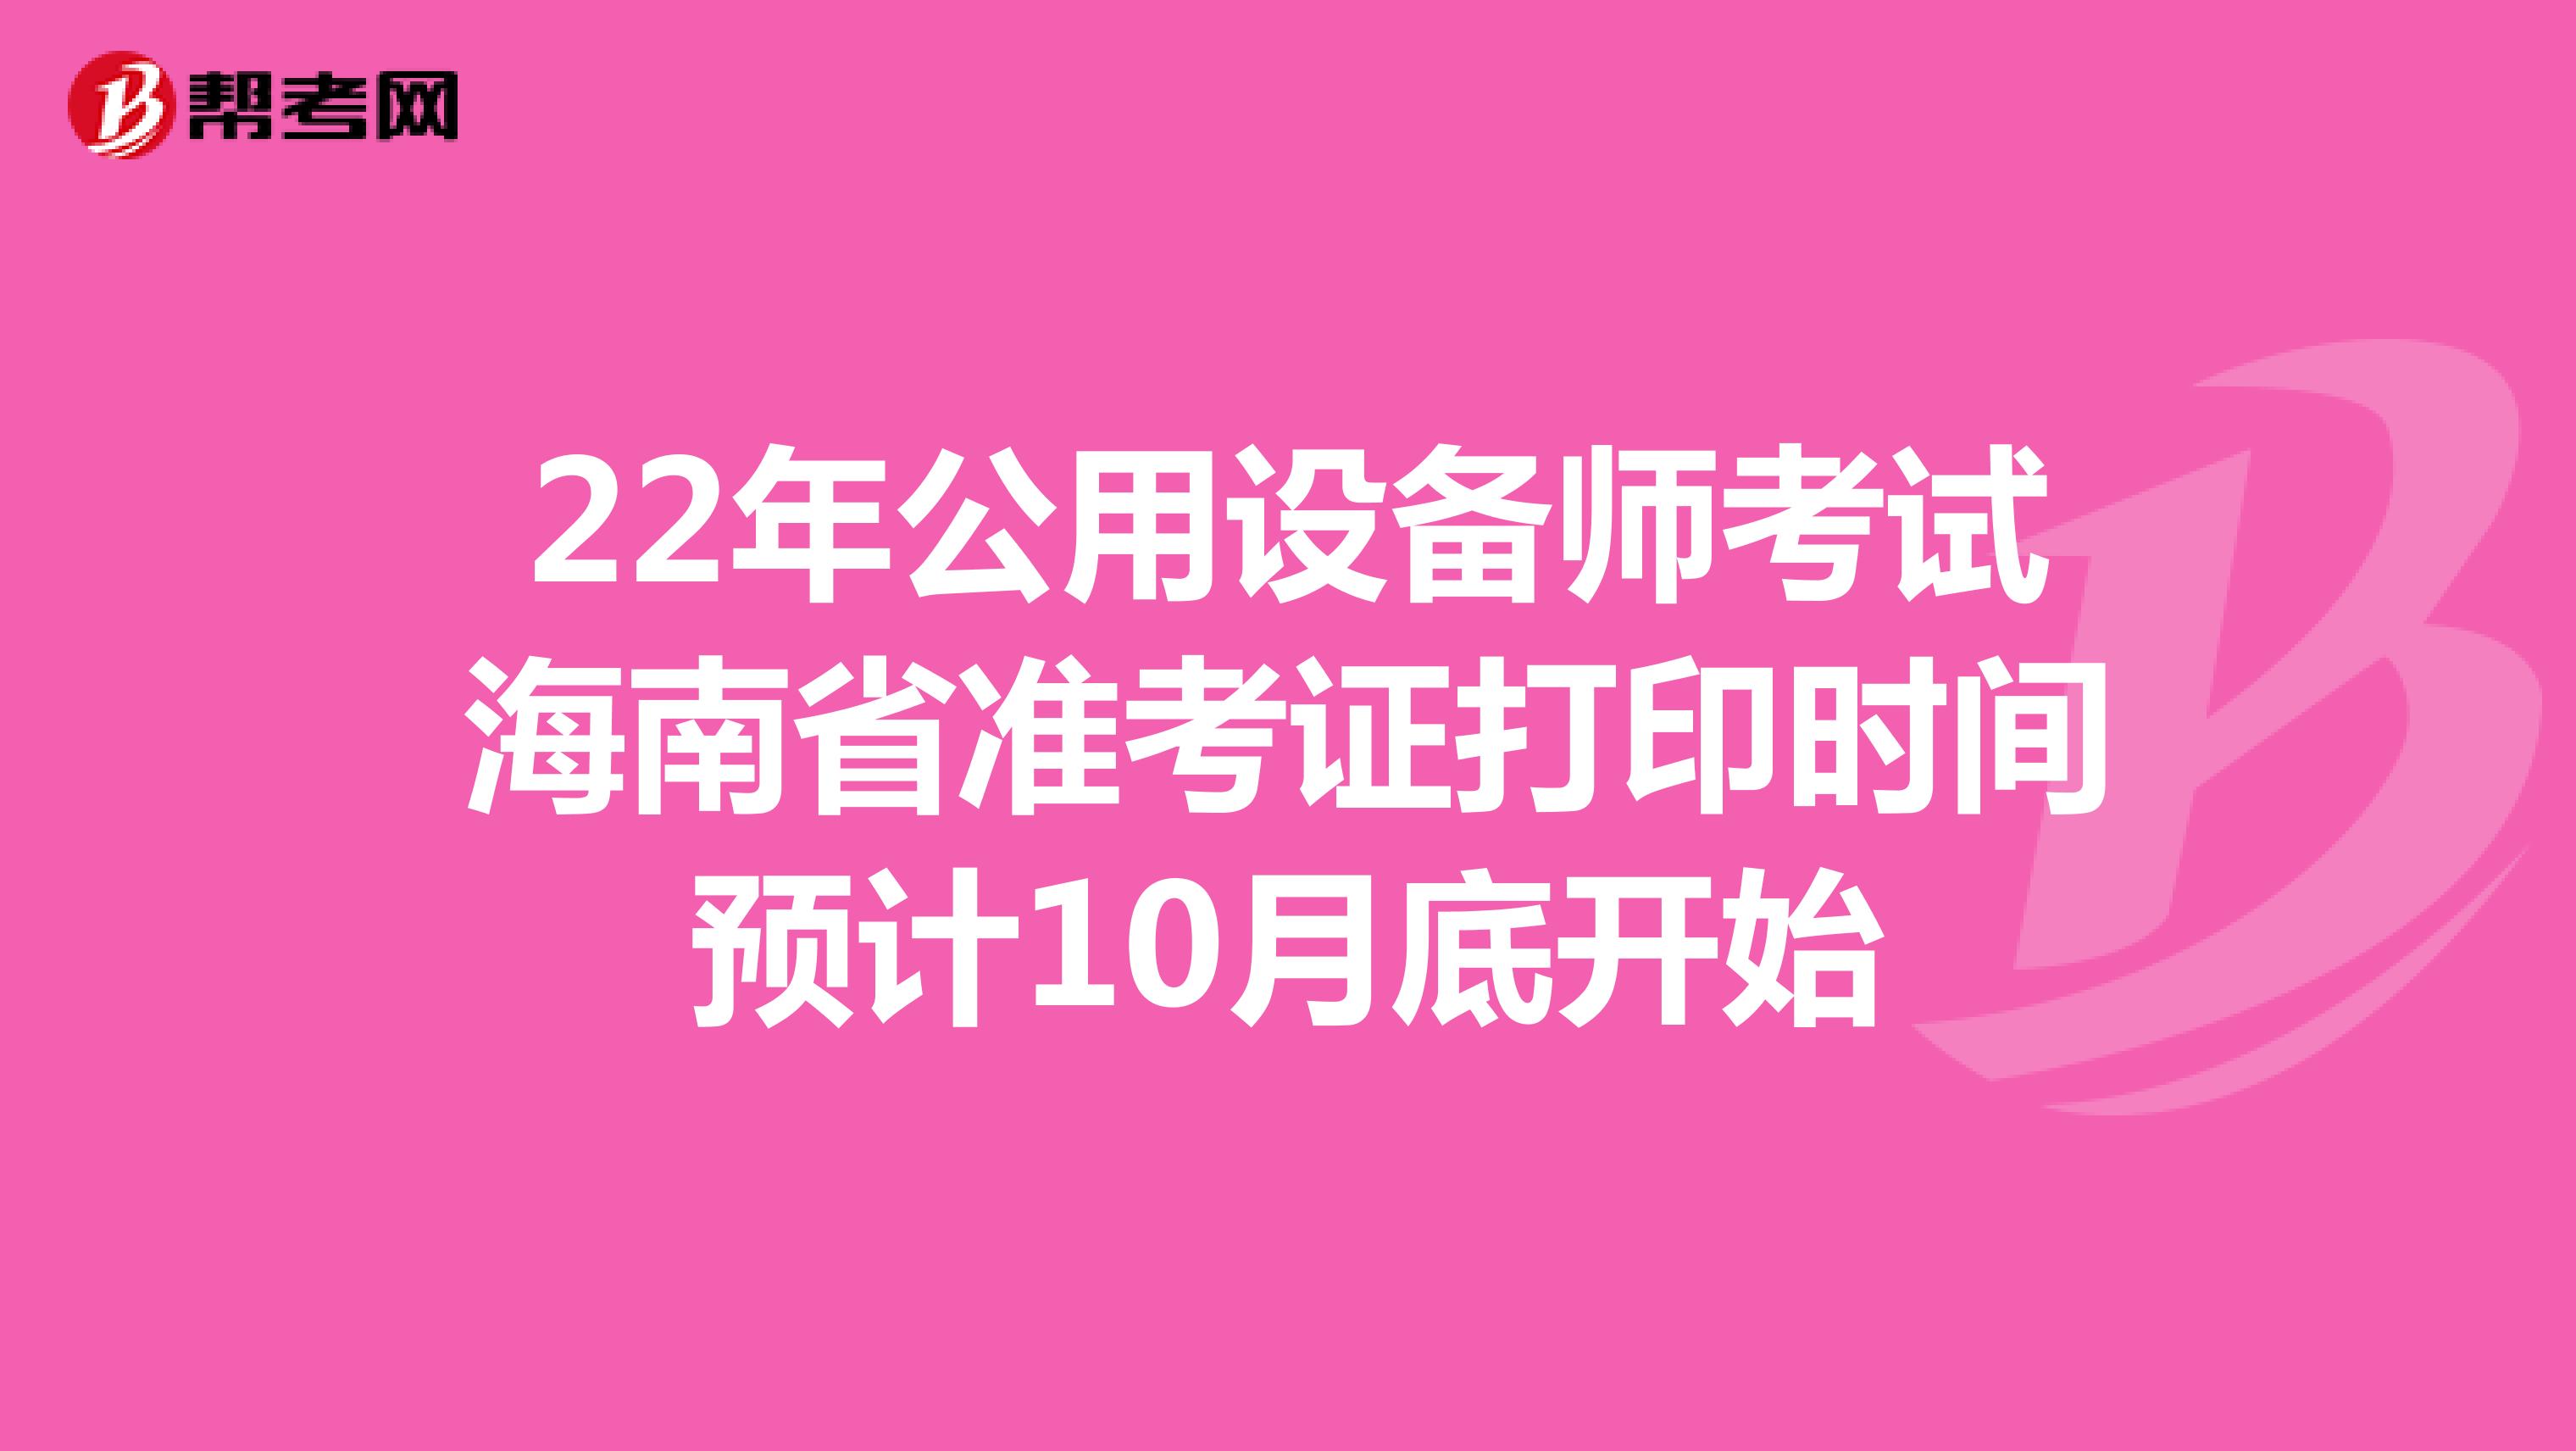 22年公用设备师考试海南省准考证打印时间预计10月底开始